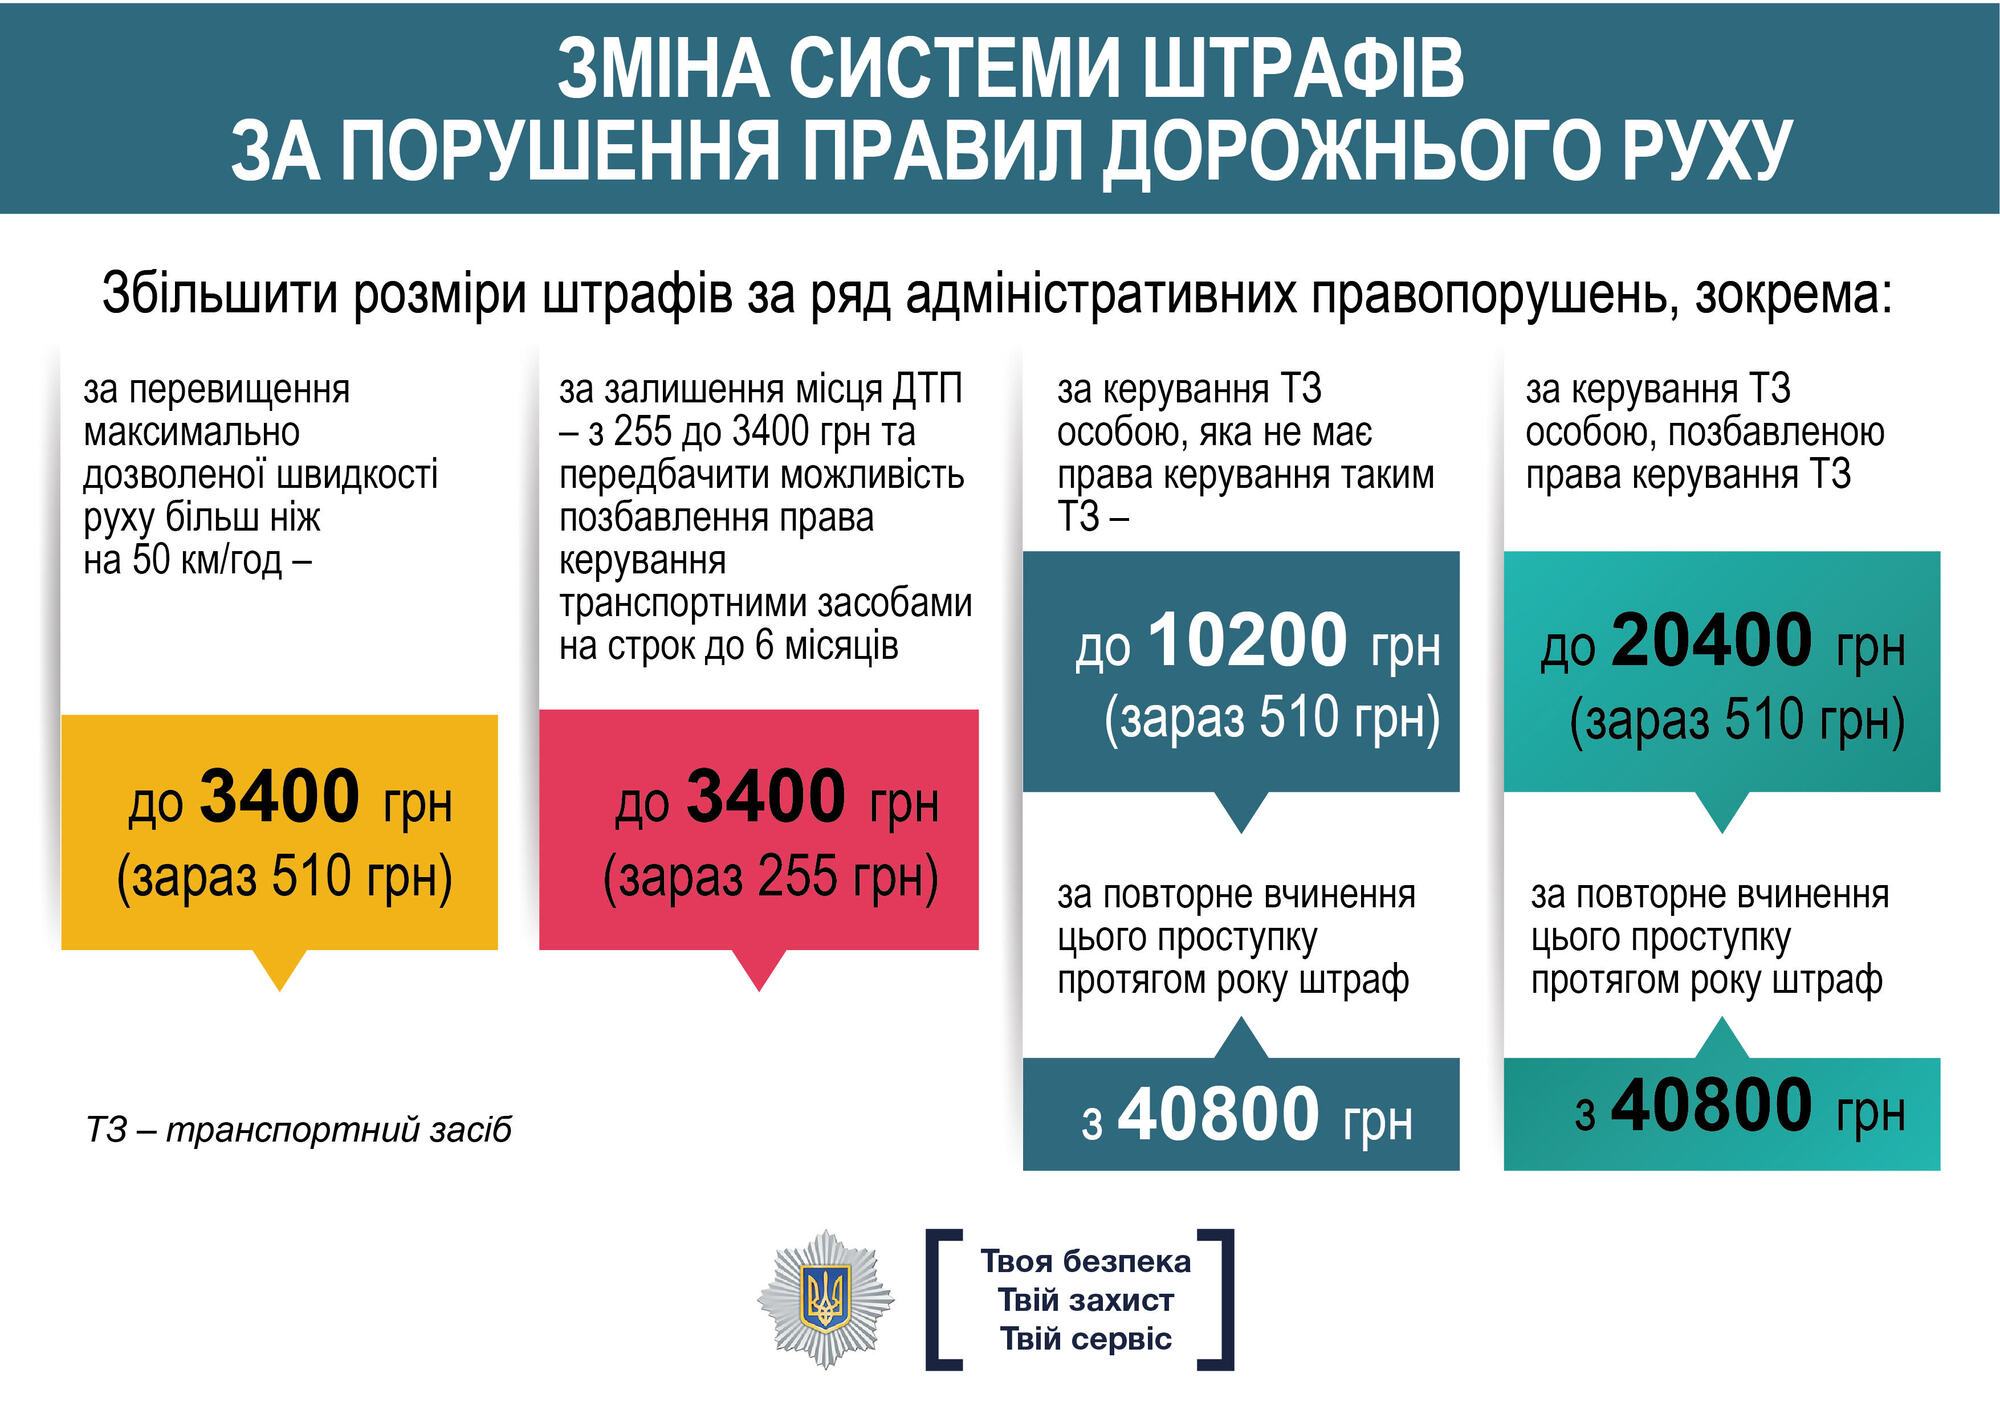 До 40 тыс. штрафа: в Украине кардинально ужесточат наказания за нарушения ПДД